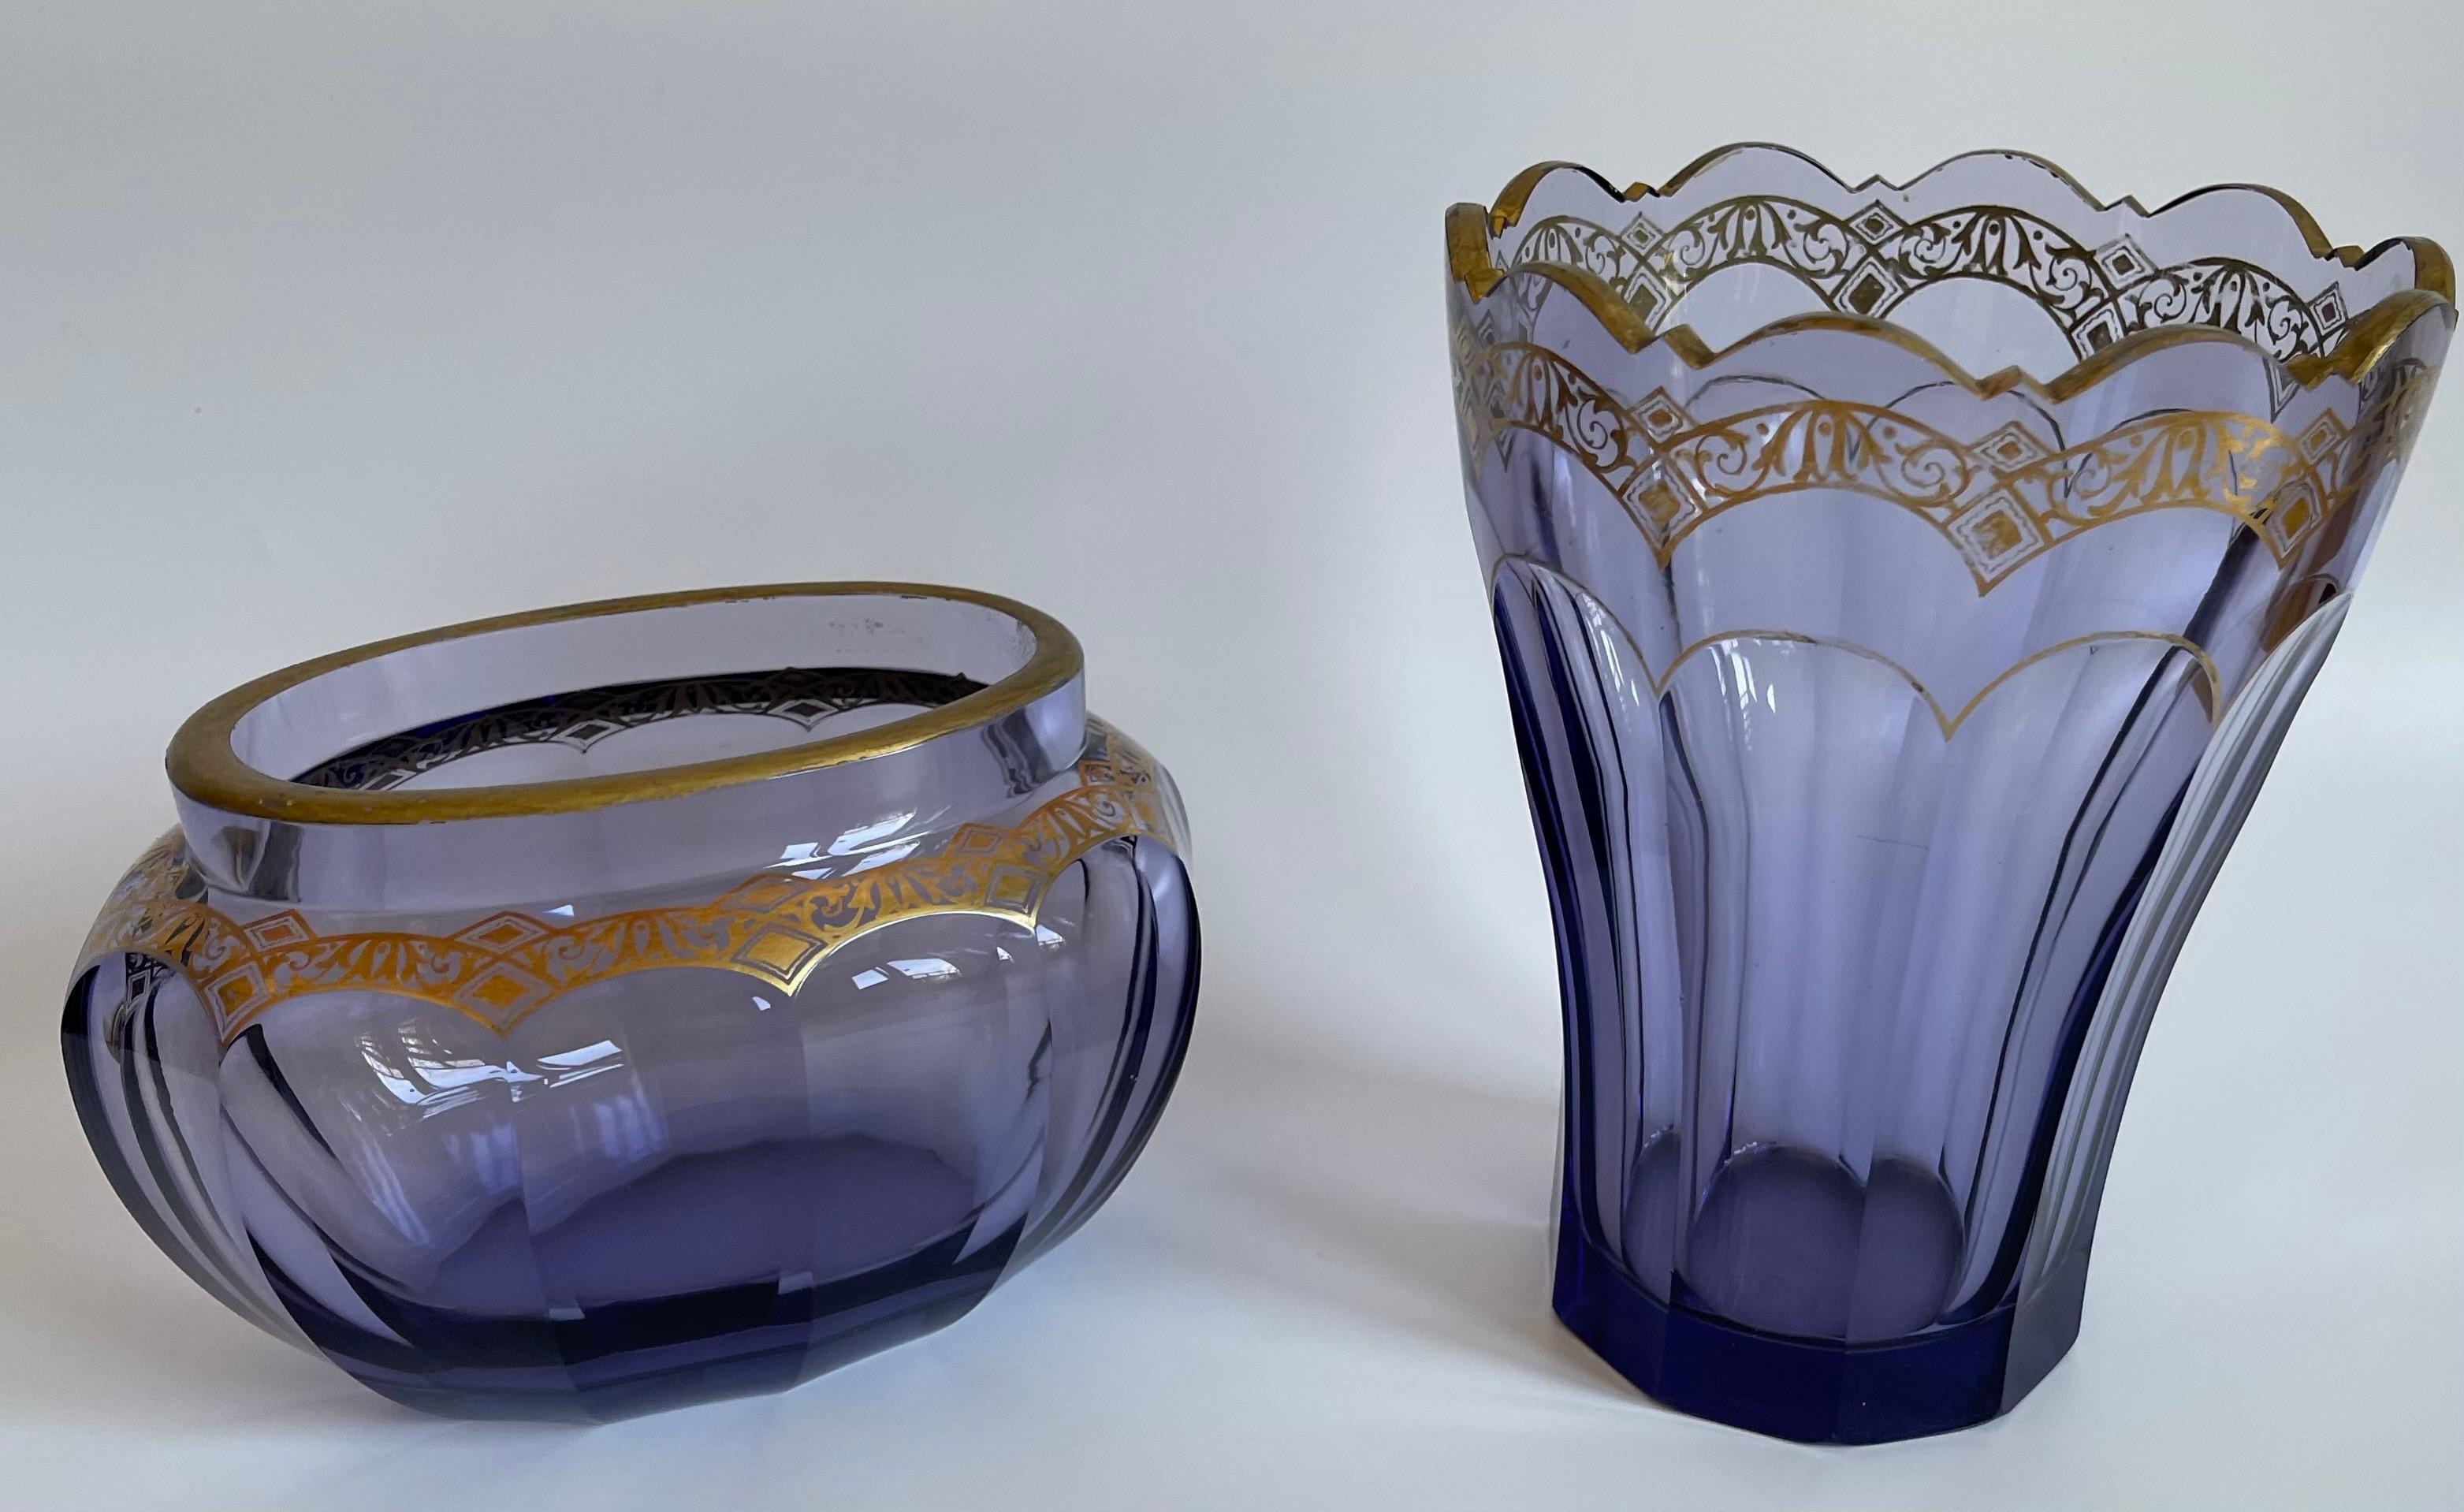 Ensemble vase et bol de style Art déco typique en verre cristal épais de couleur violet-bleu avec une bordure dorée peinte à la main. Il s'agit d'une belle addition à tout intérieur, qu'il soit moderne ou traditionnel.